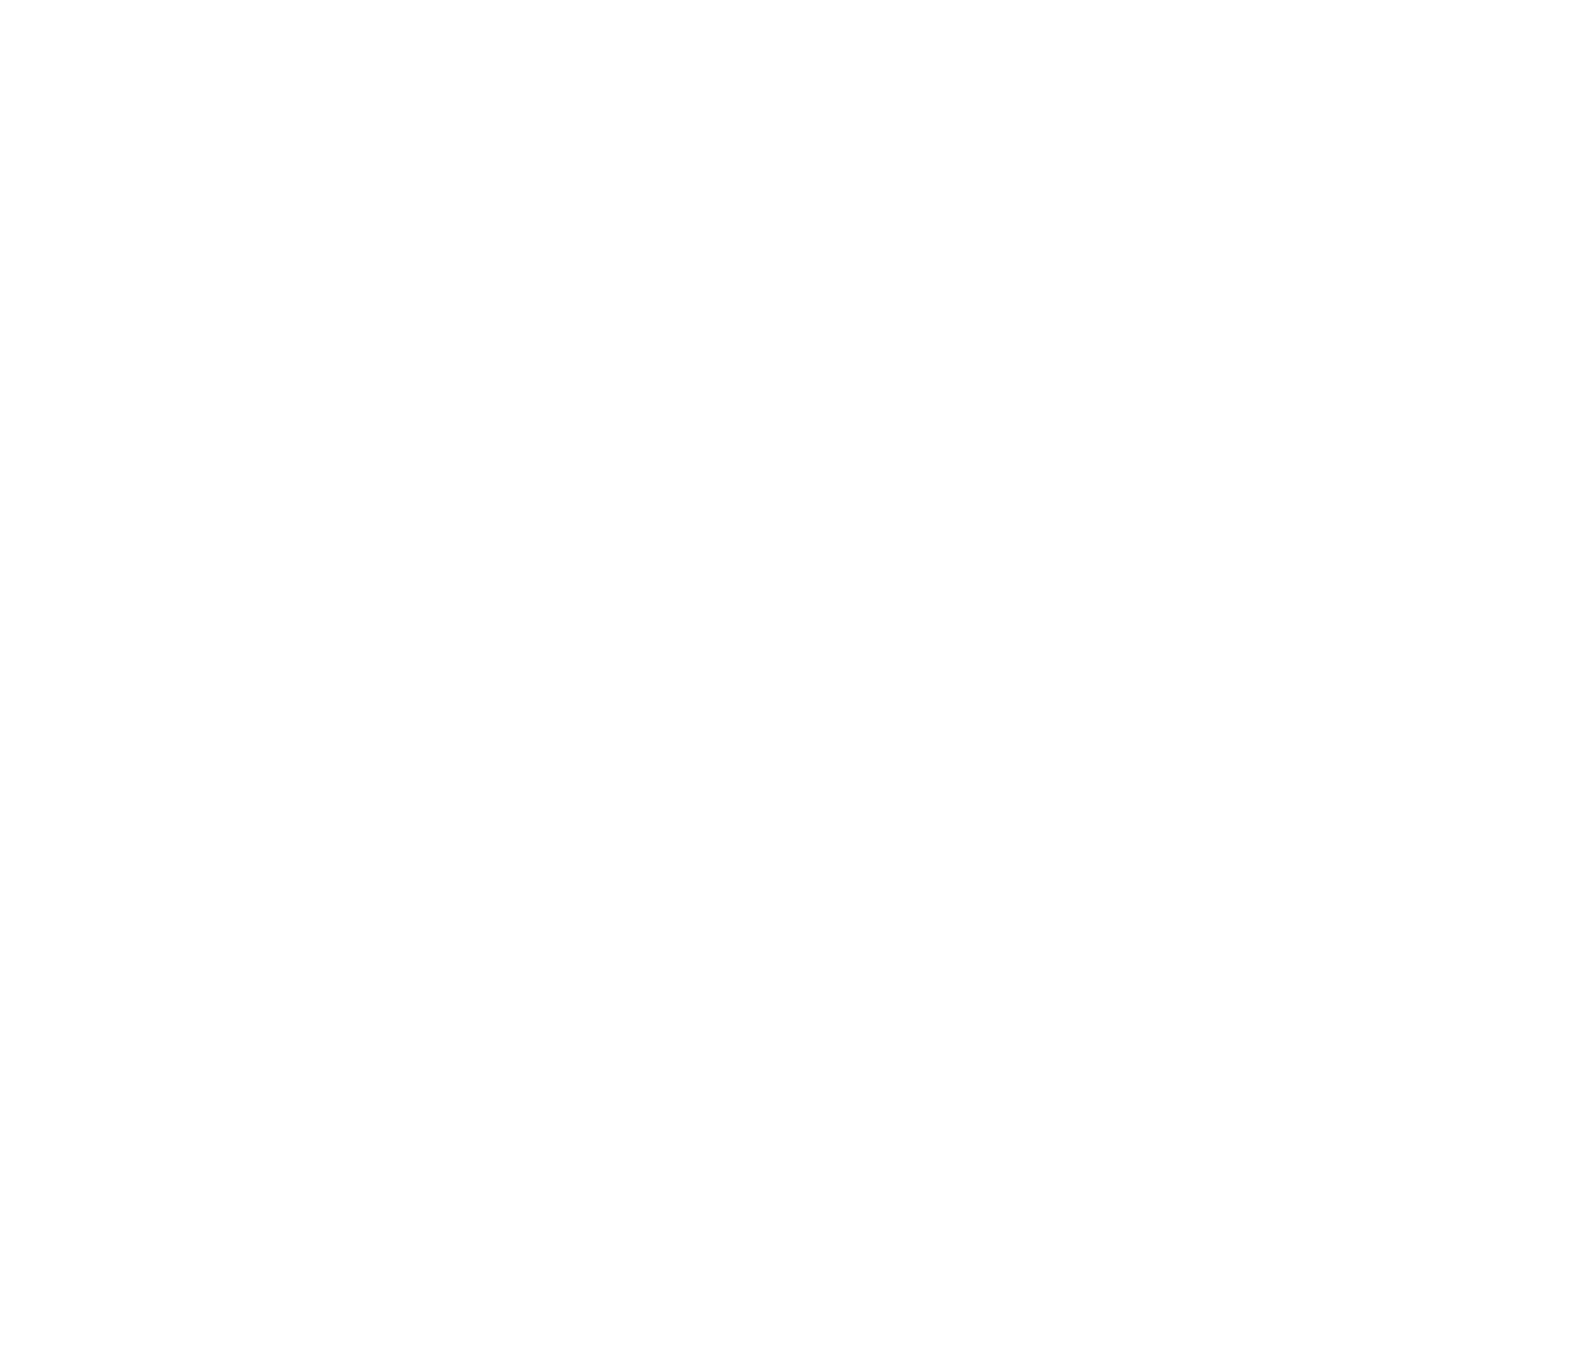 Triterras logo large for dark backgrounds (transparent PNG)